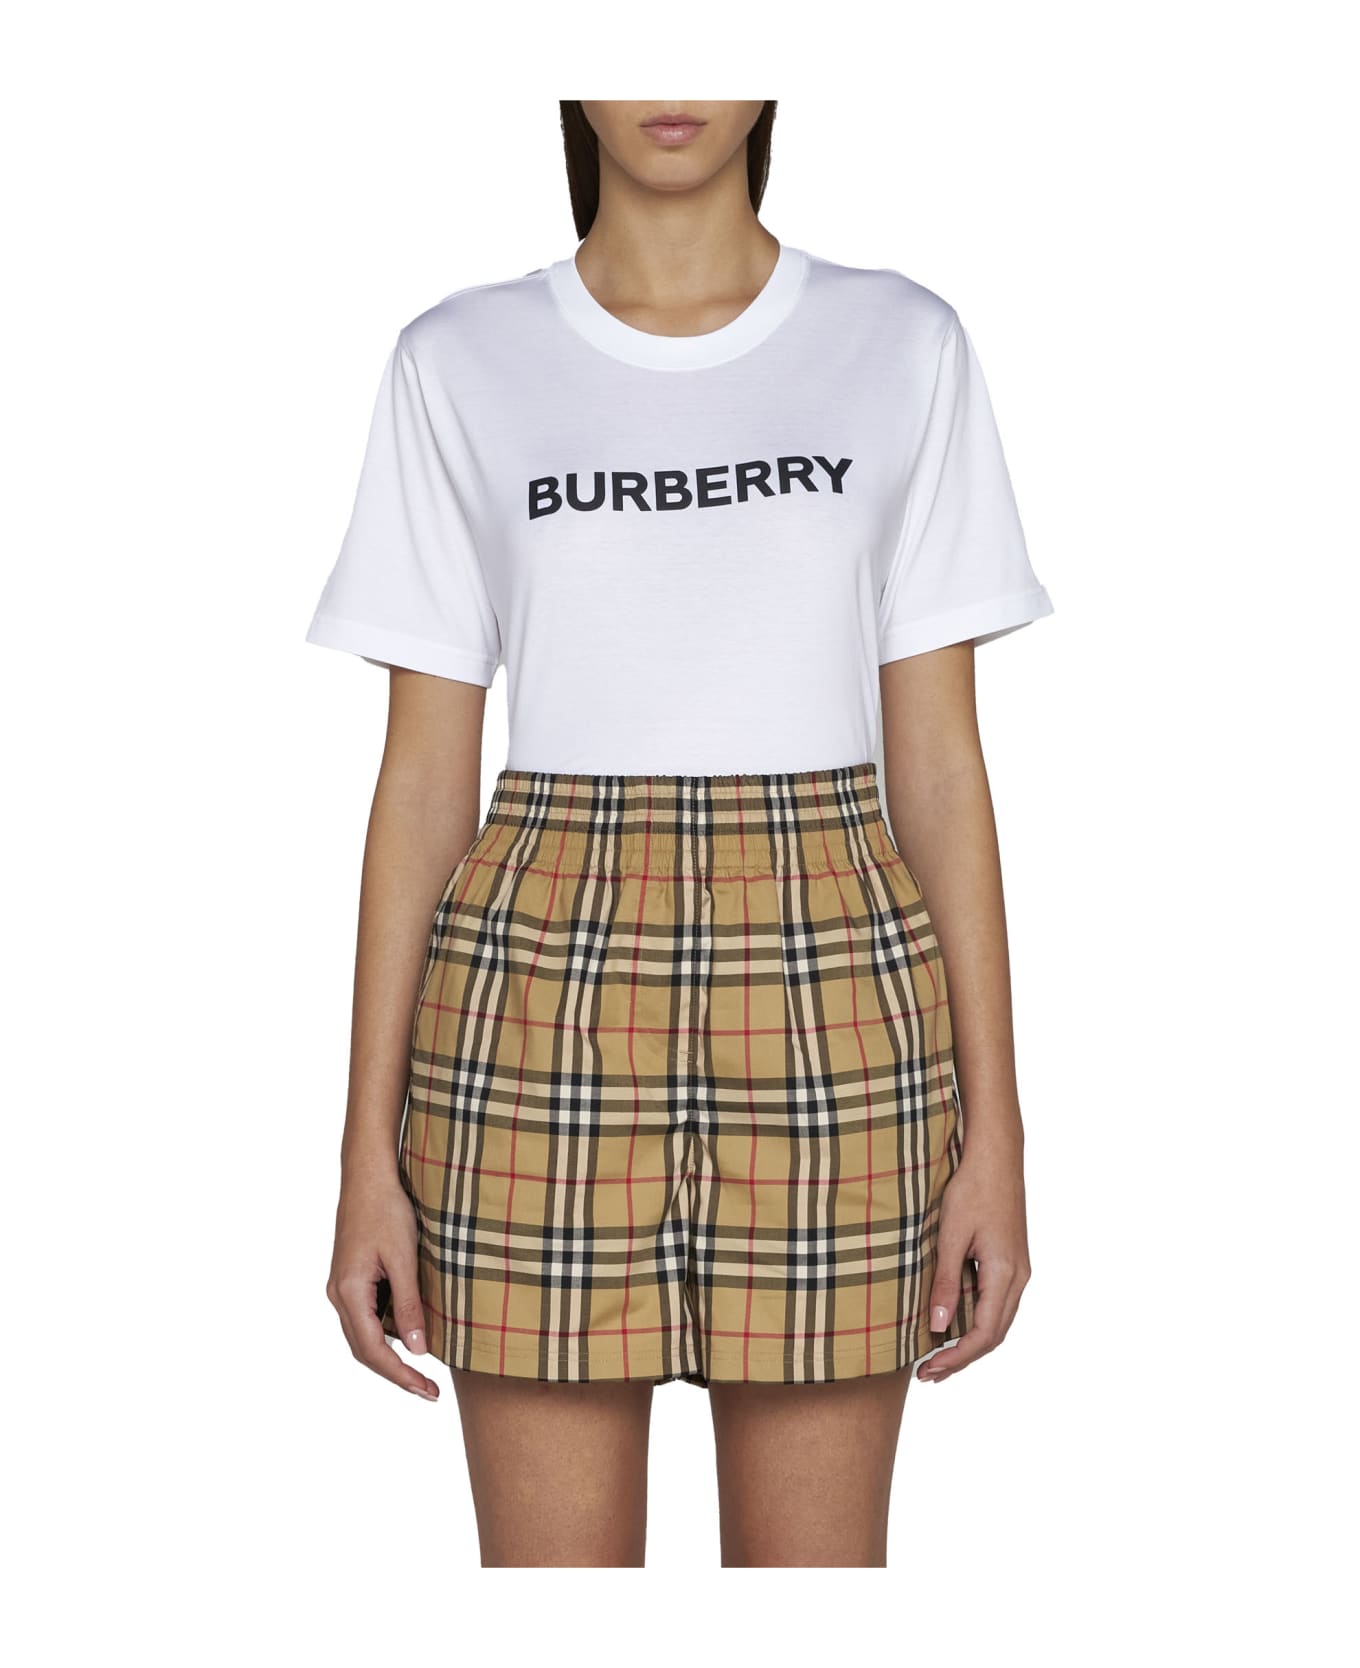 Burberry Logo Printed Crewneck T-shirt - White